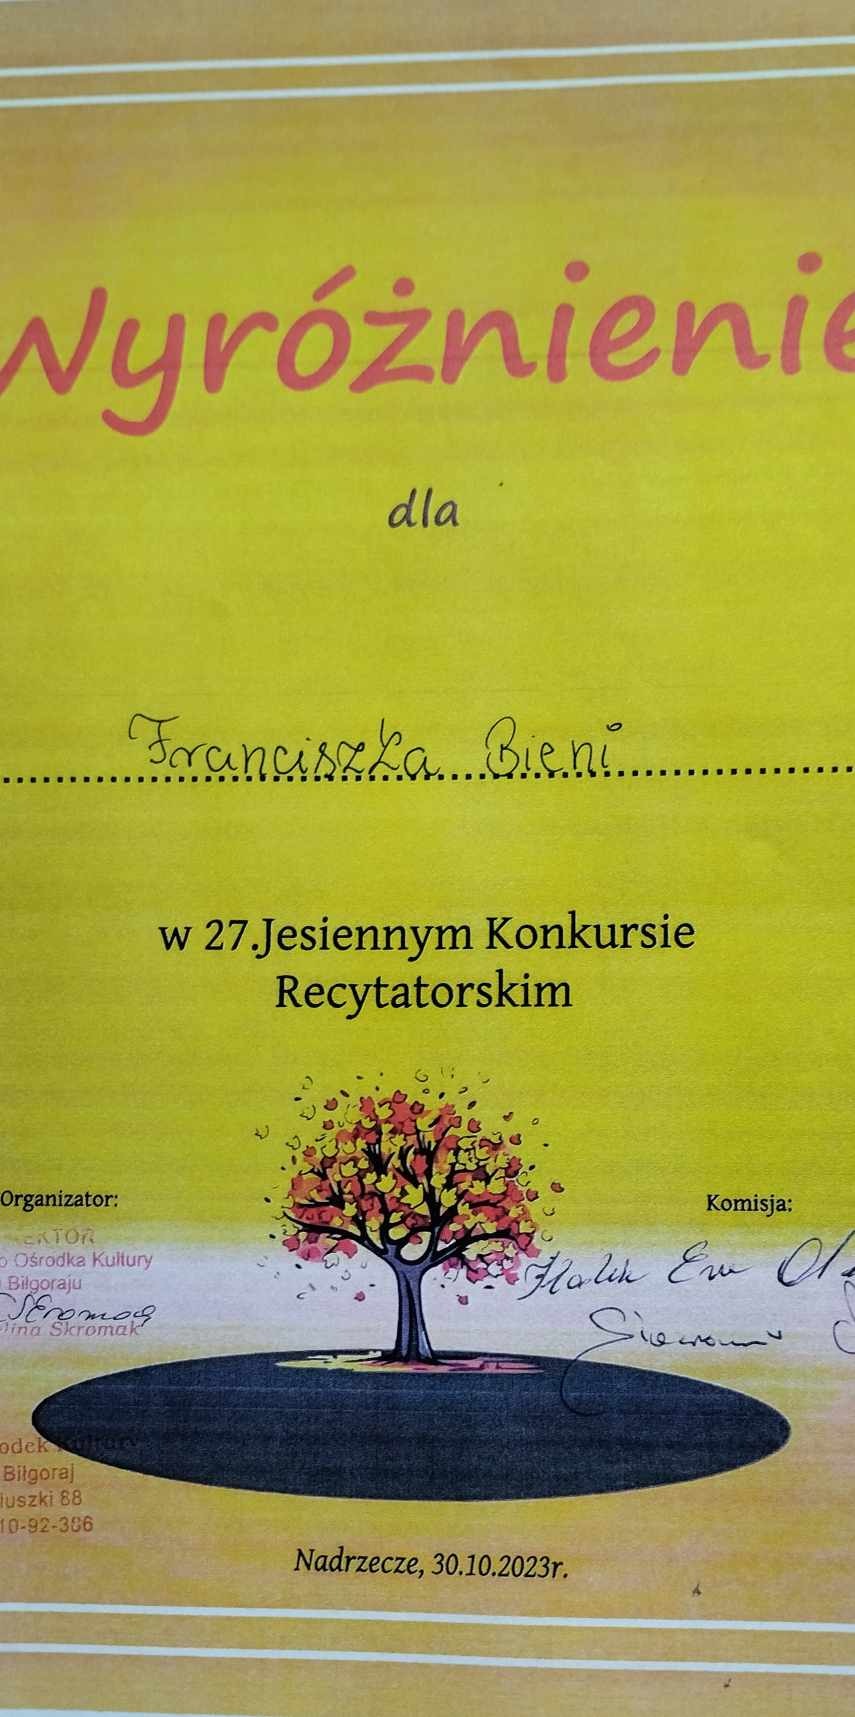 27 Jesienny Konkurs Recytatorski „Sny i marzenia" - eliminacje gminne w Nadrzeczu 30 października 2023r. - Obrazek 3